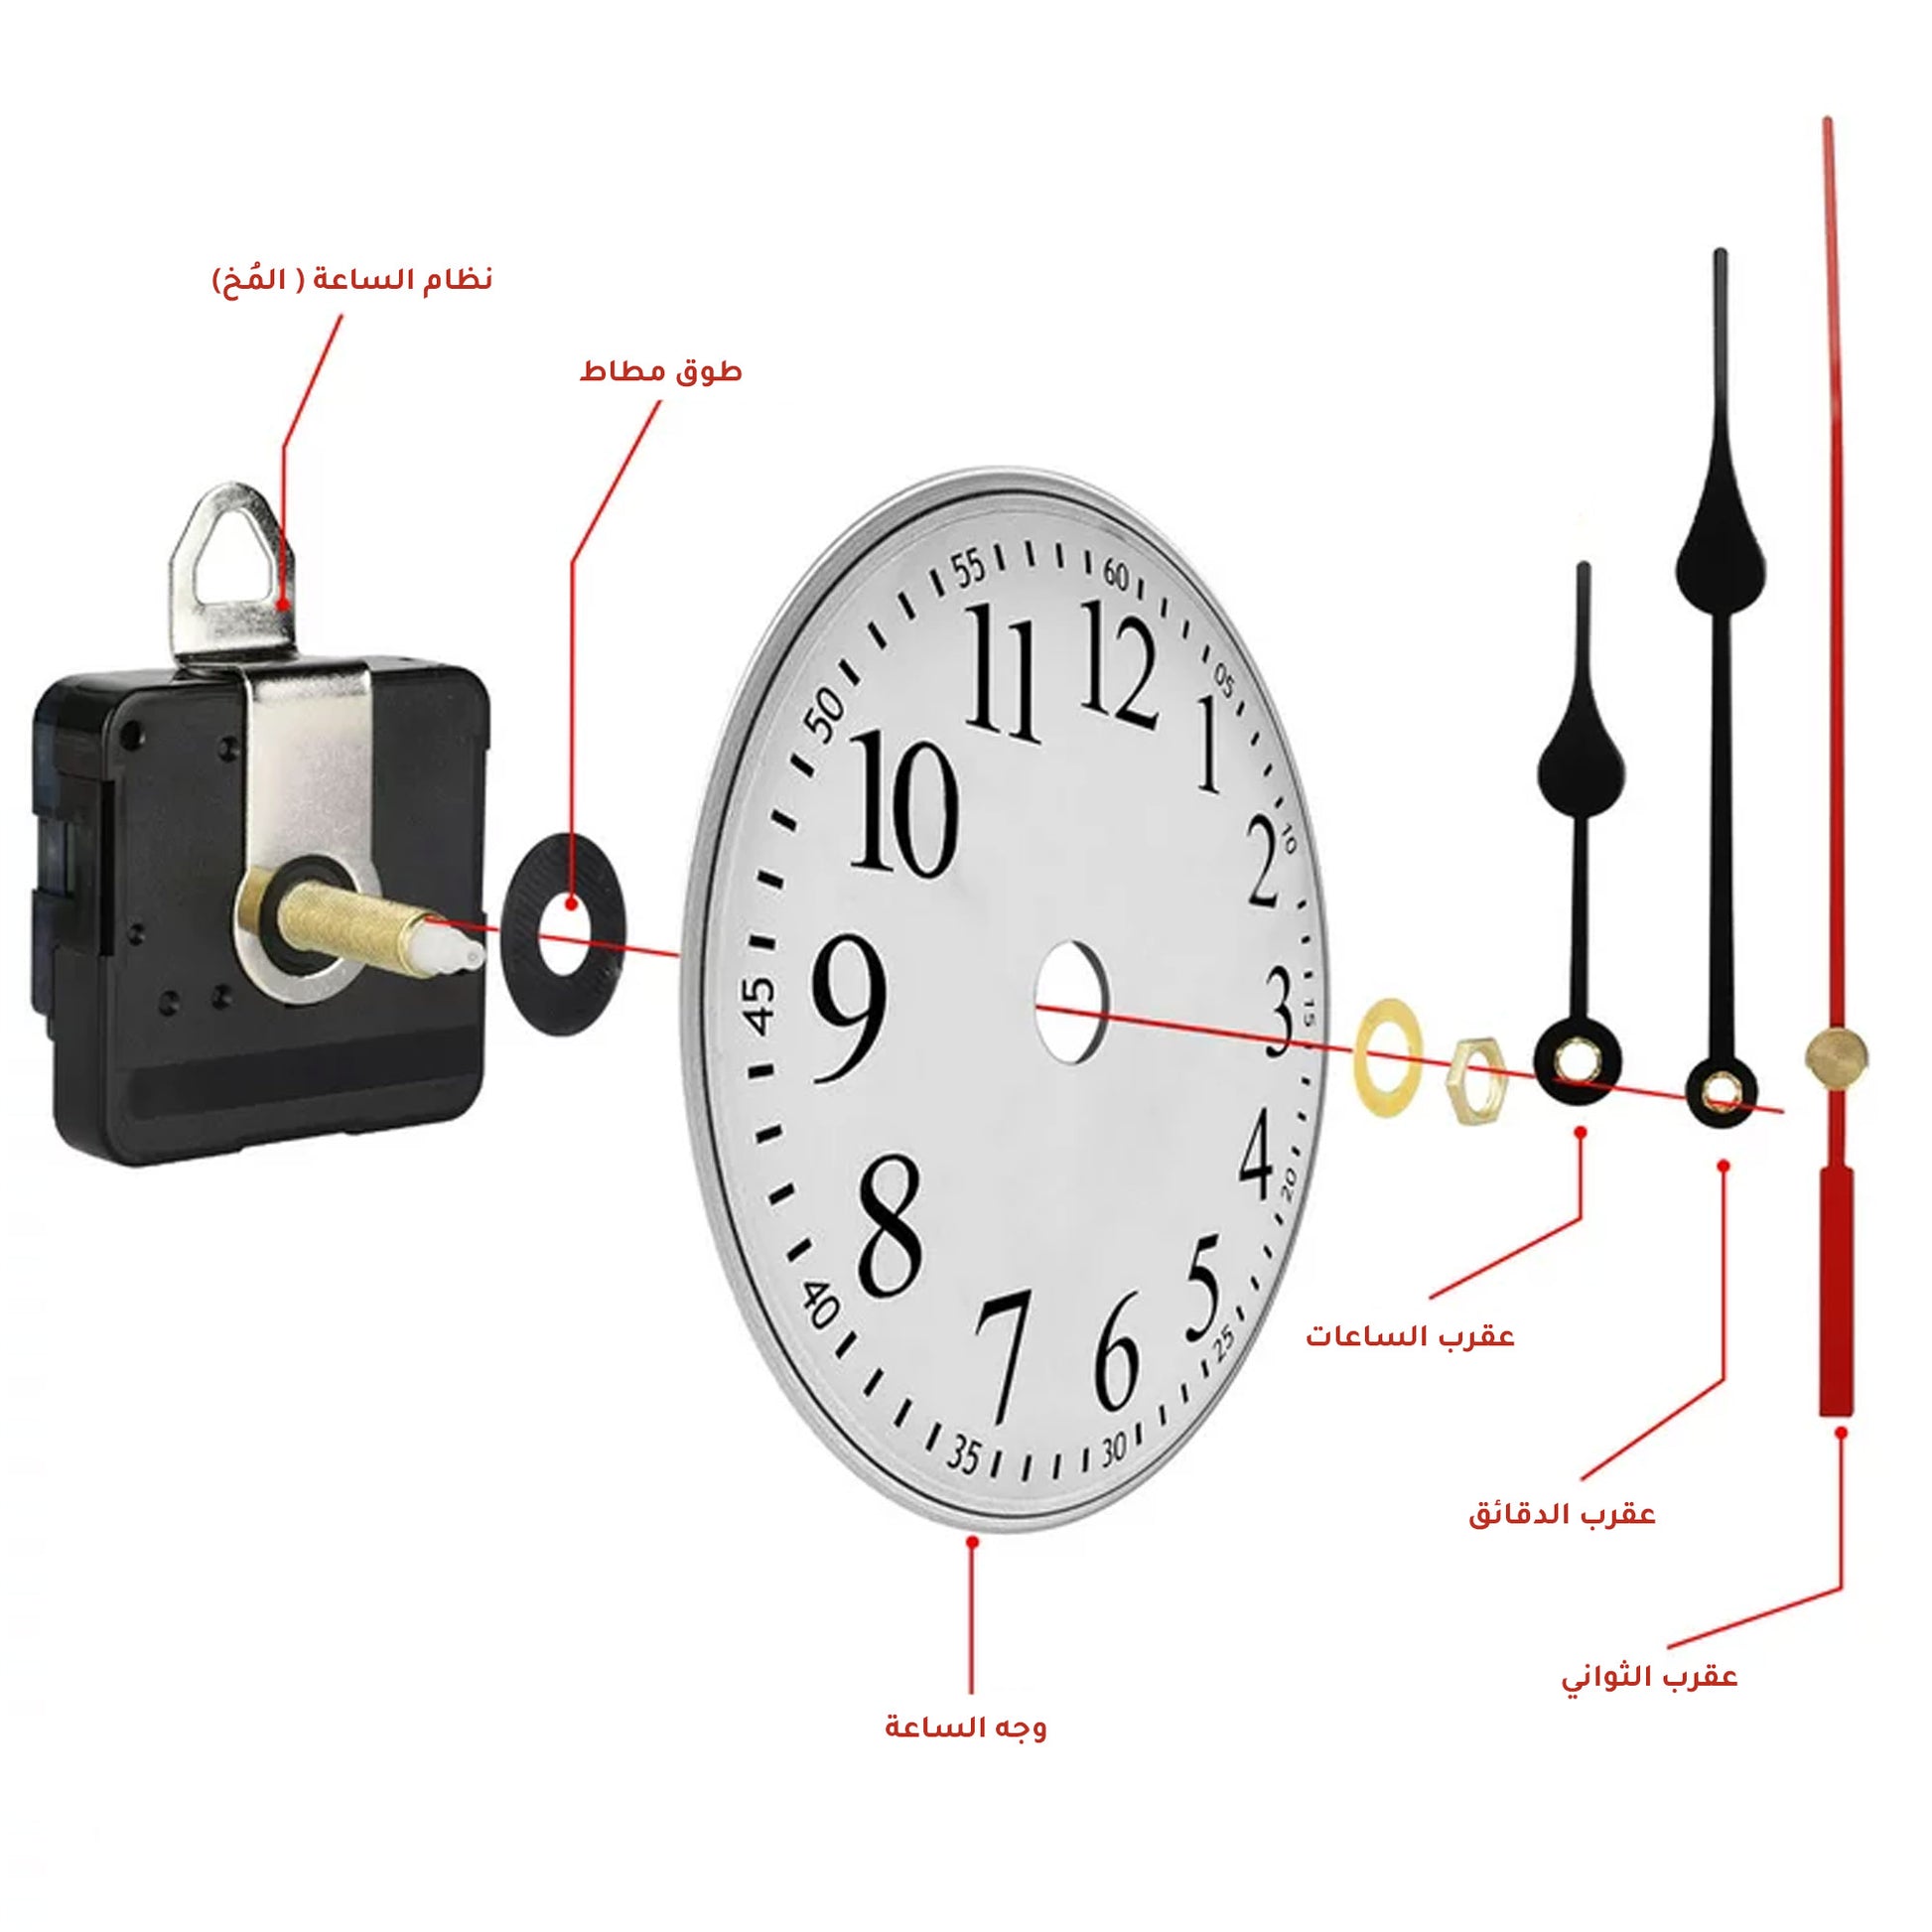 Woodberg - باكيج آلية الساعة أصلي (مُحرك الساعة + عقارب الساعة) شكل مزخرف لساعات حجم 20-35 سم 